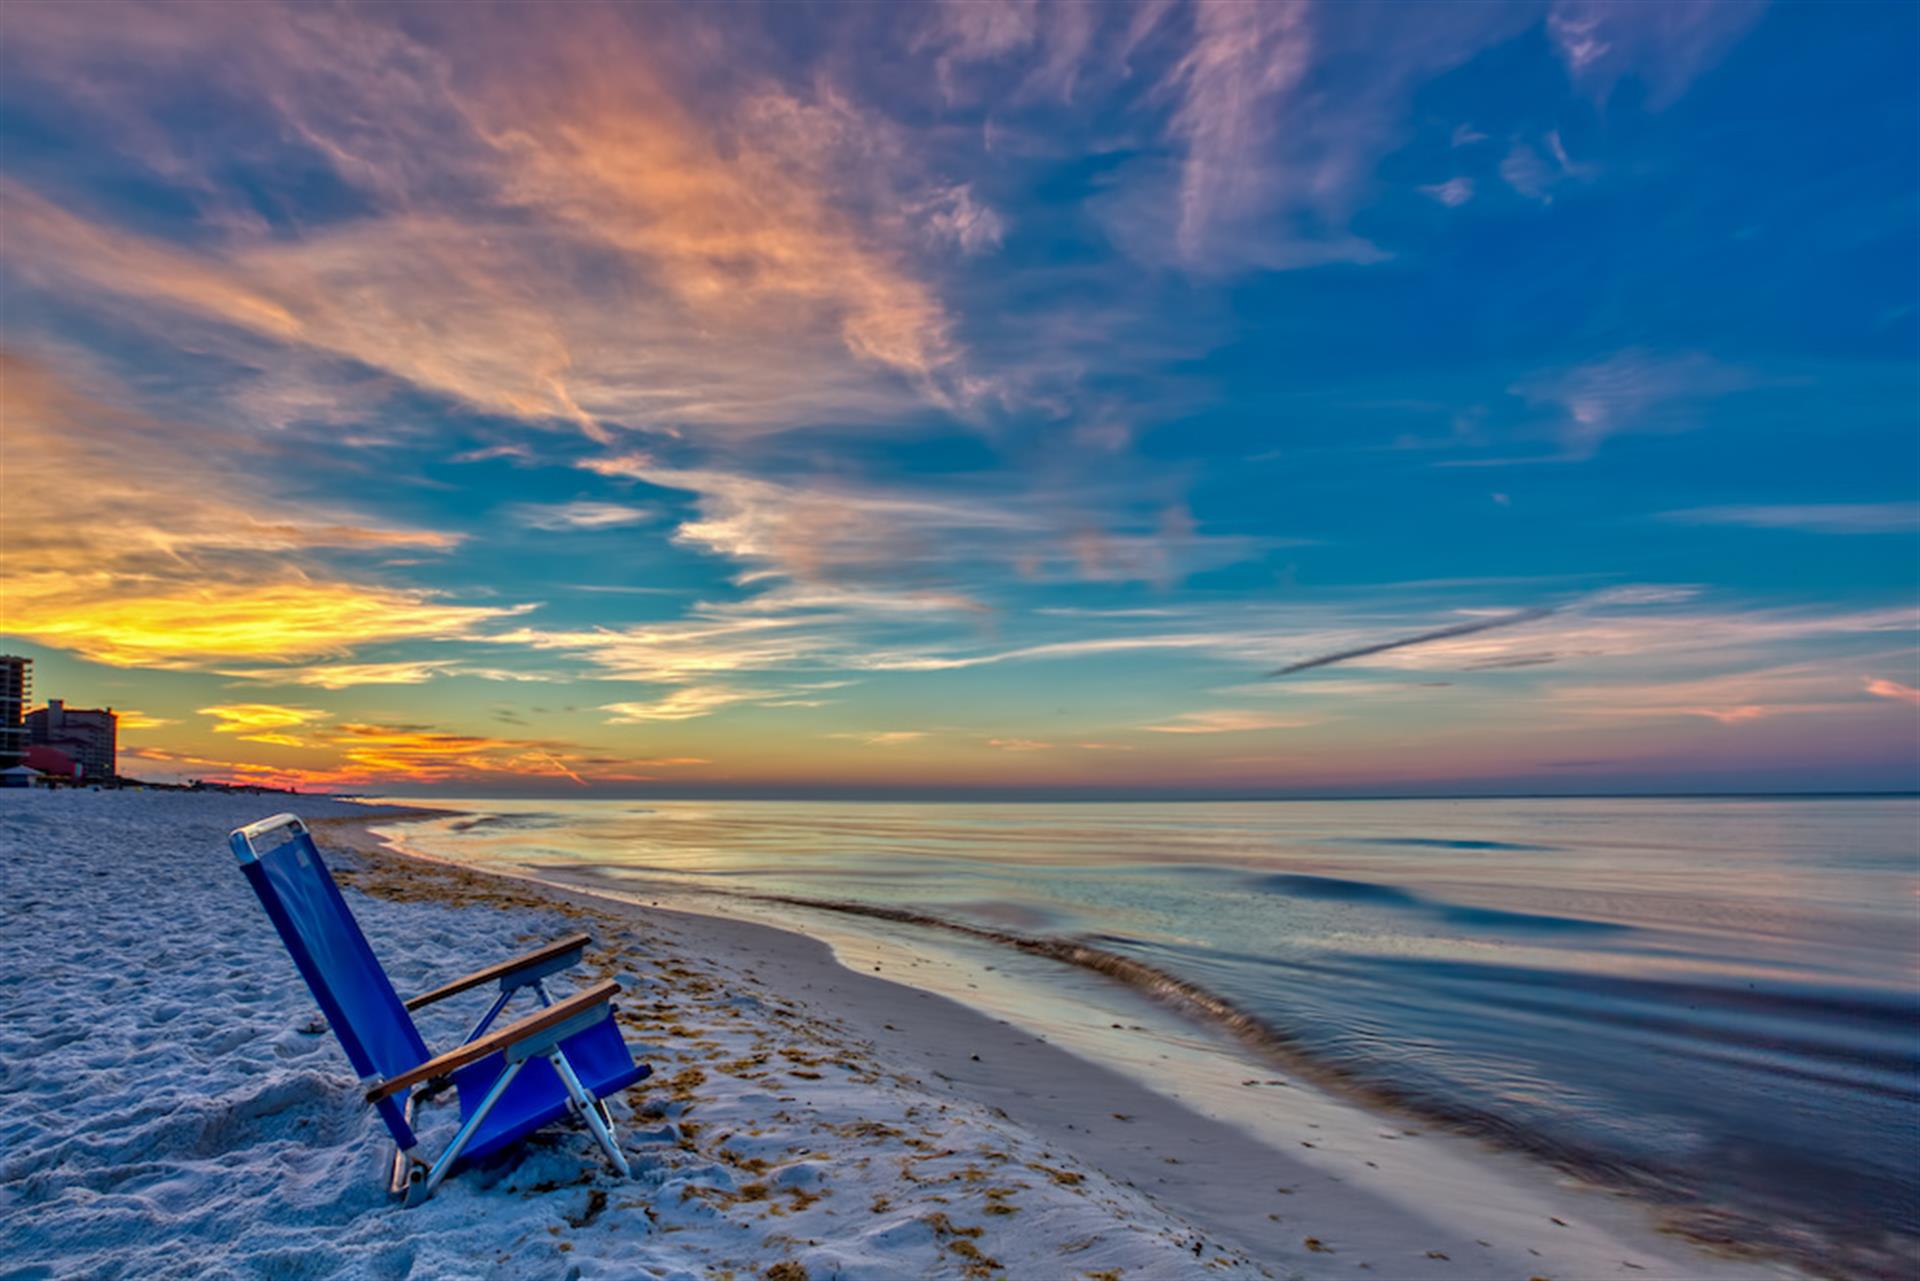 Beach chair on the beach in Destin